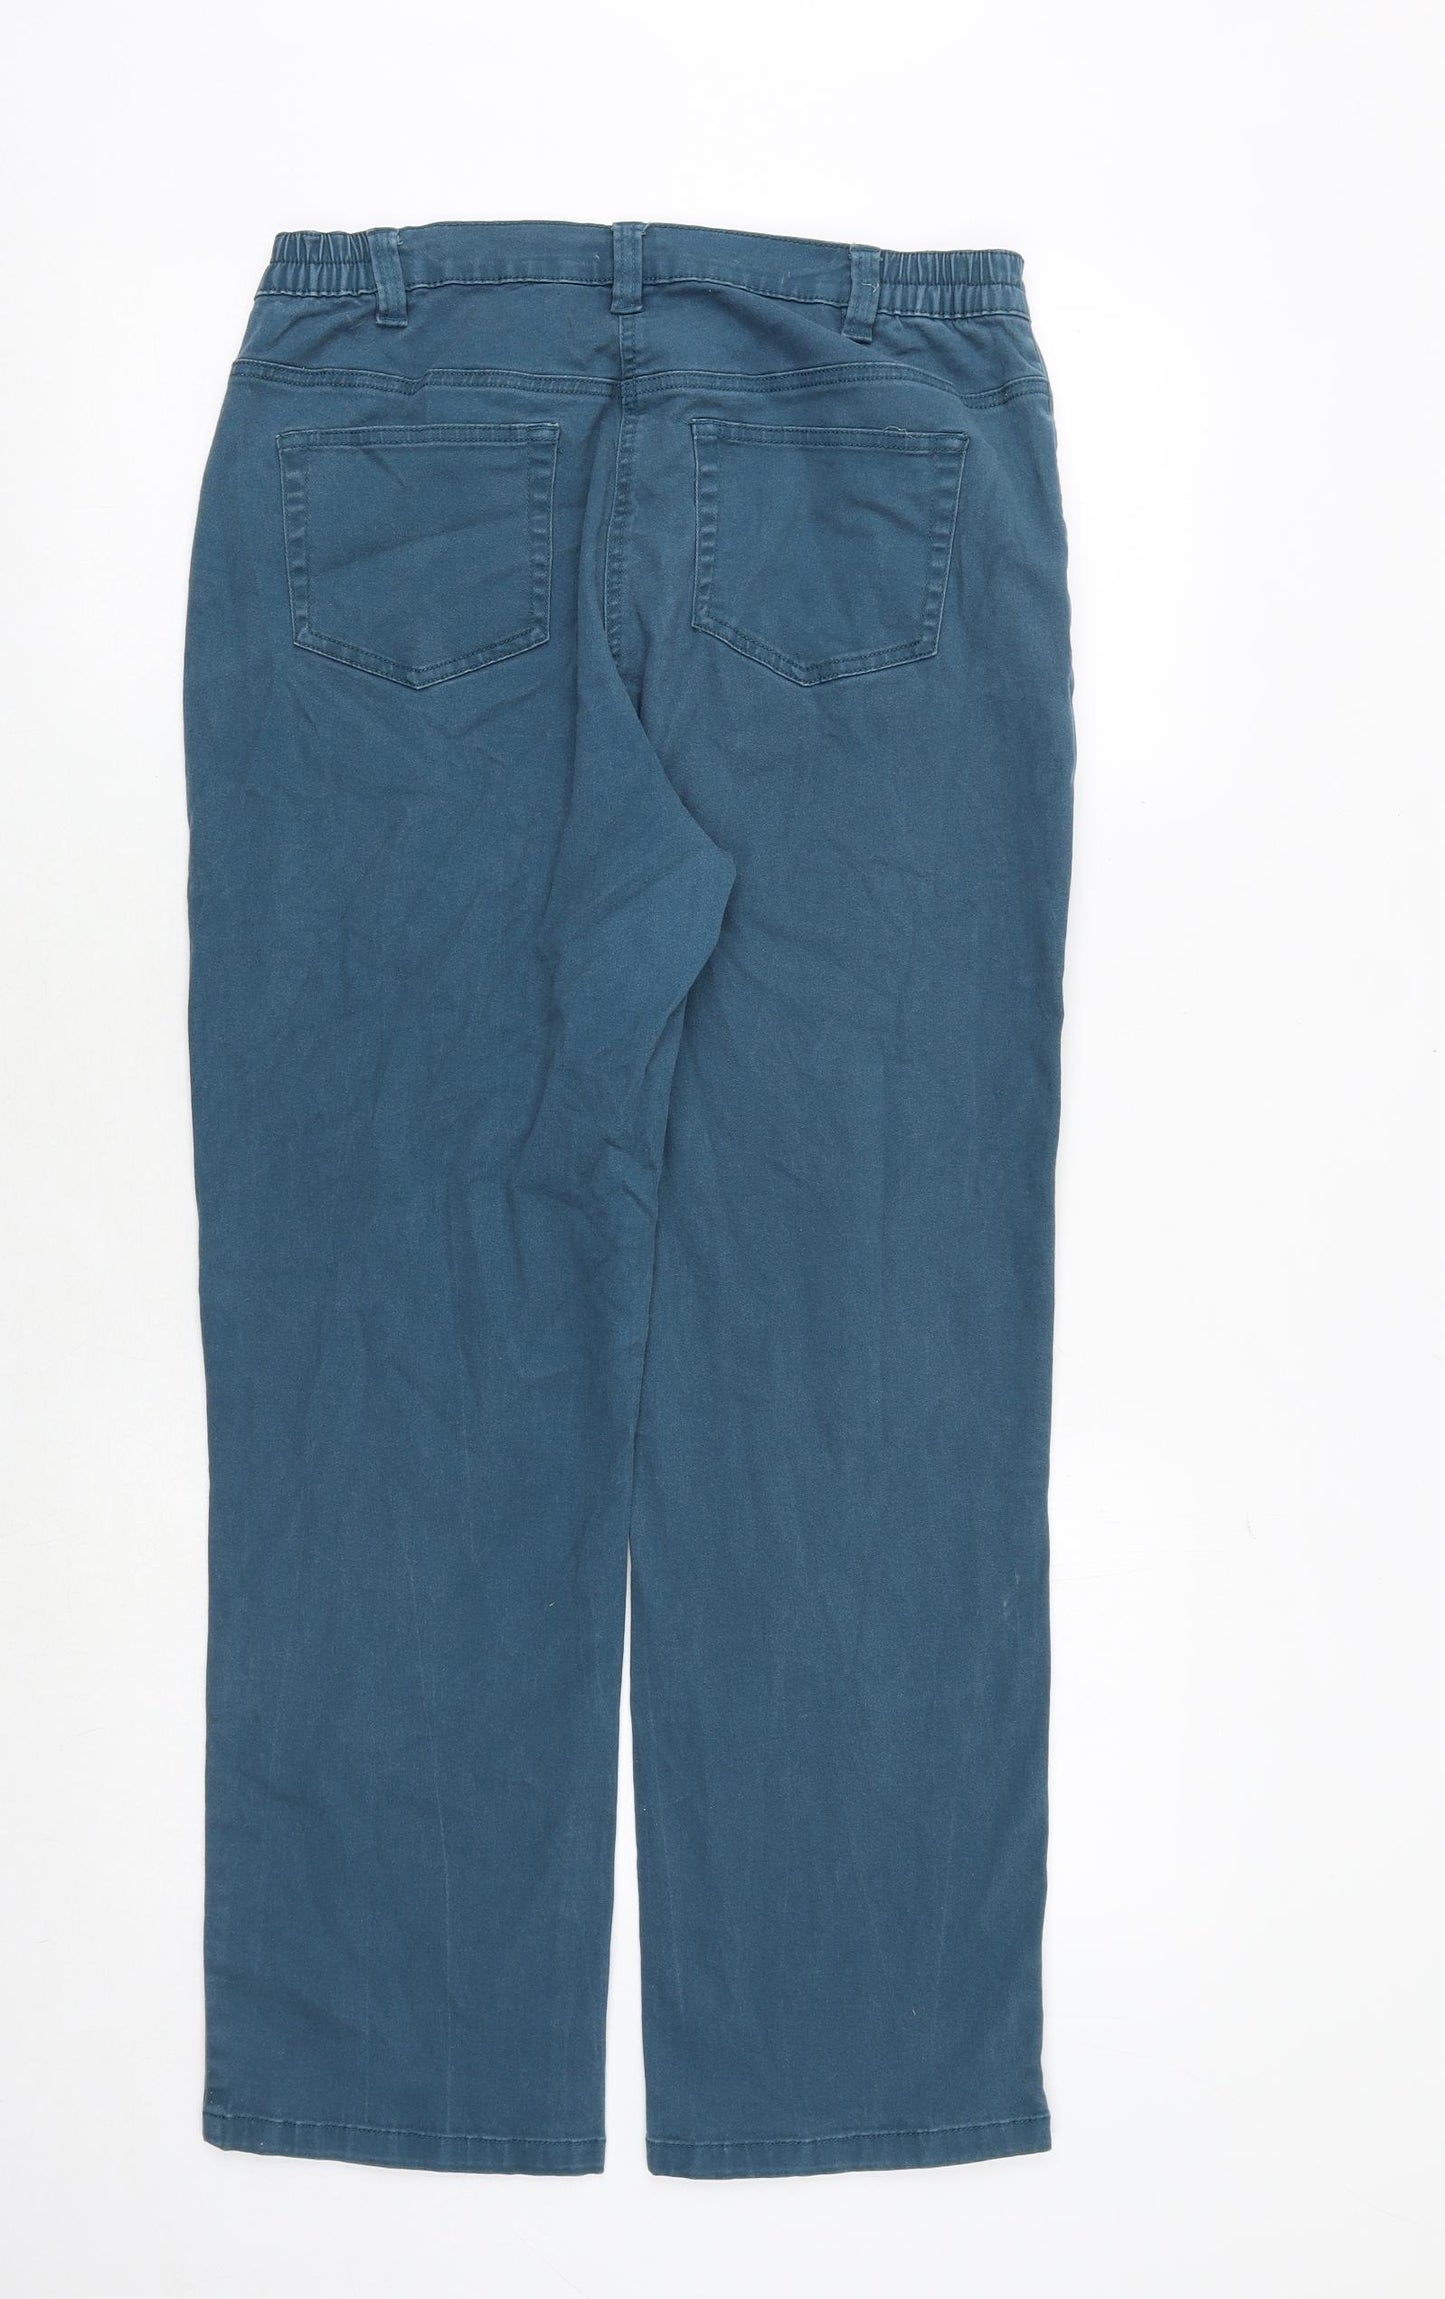 Damart Womens Green Cotton Straight Jeans Size 18 Regular Zip